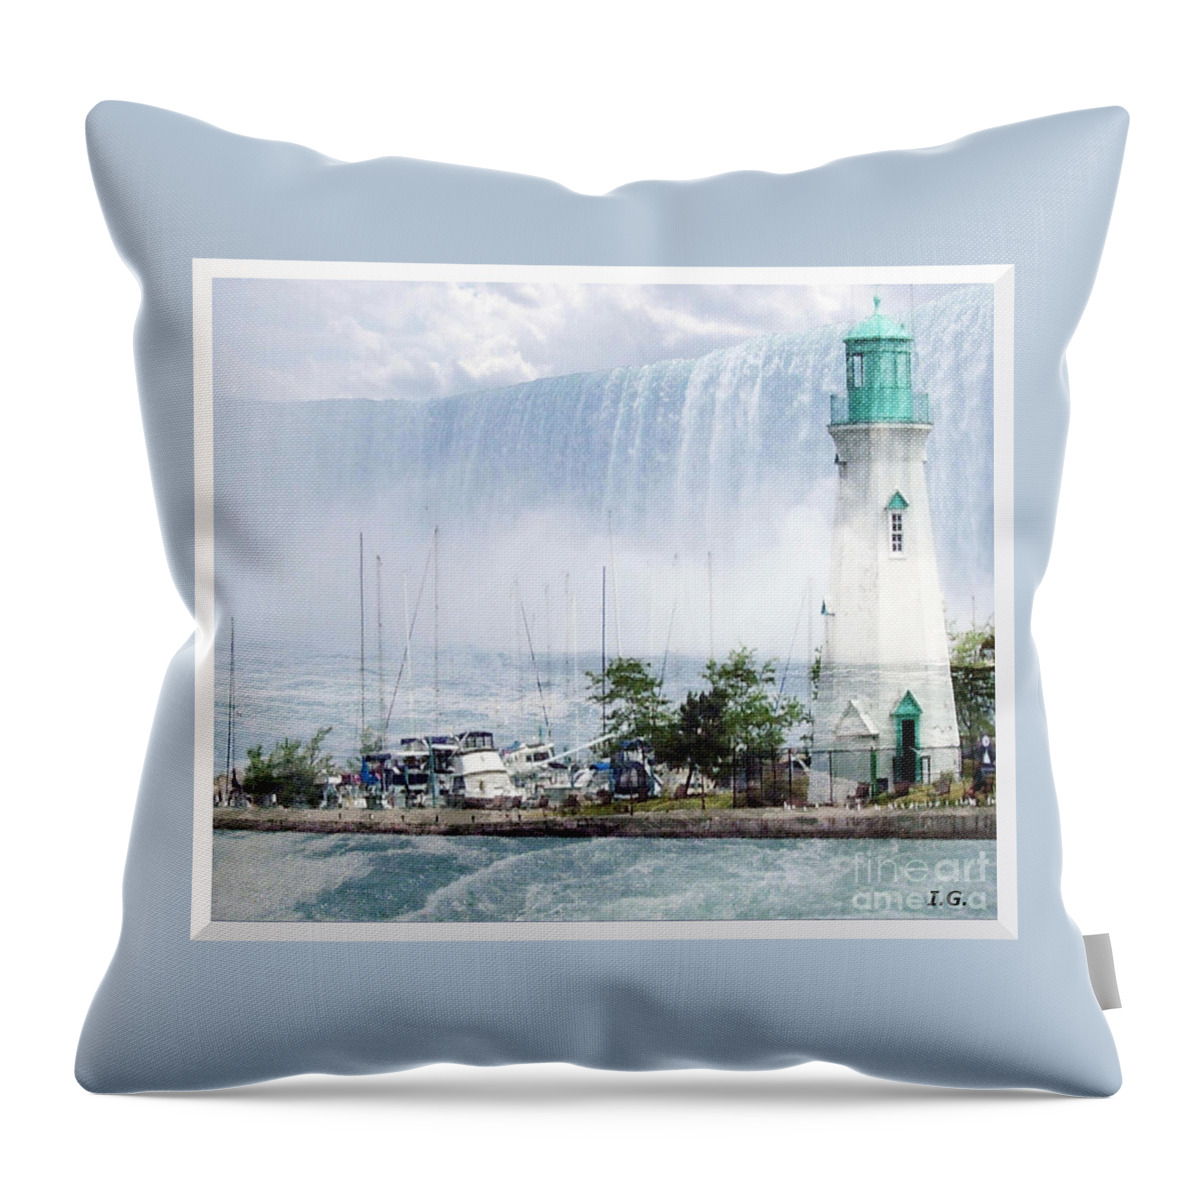 Photograph Throw Pillow featuring the digital art The Best of Niagara #2 by Iris Gelbart